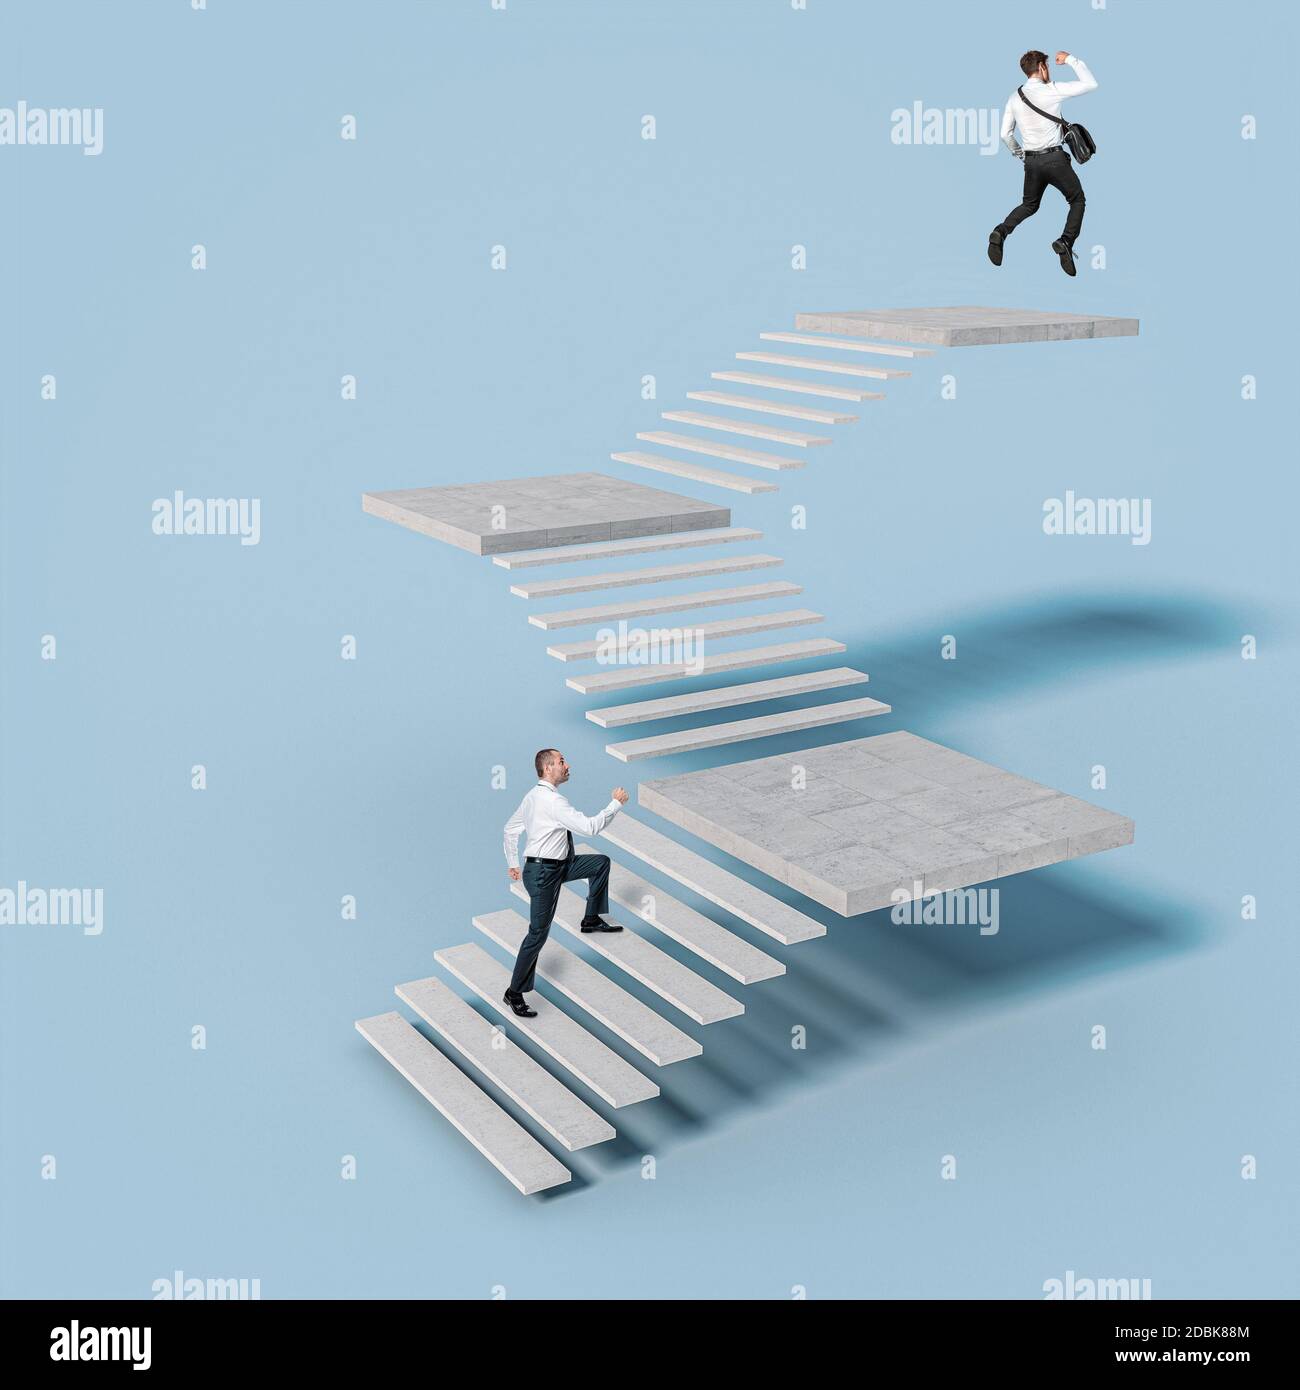 gli uomini d'affari salgono le scale per raggiungere il successo. L'uomo in cima salta per gioia Foto Stock